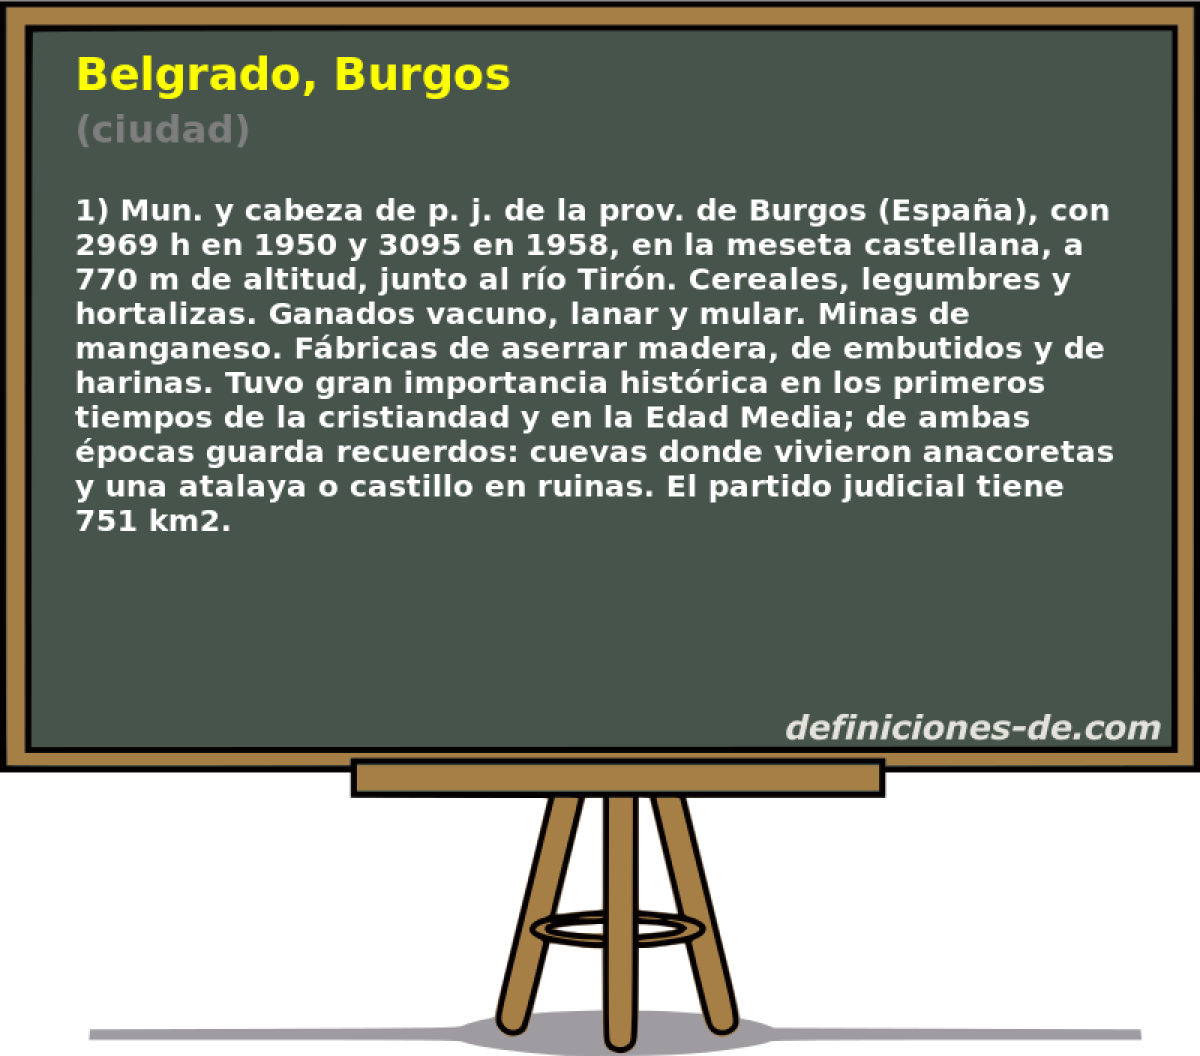 Belgrado, Burgos (ciudad)